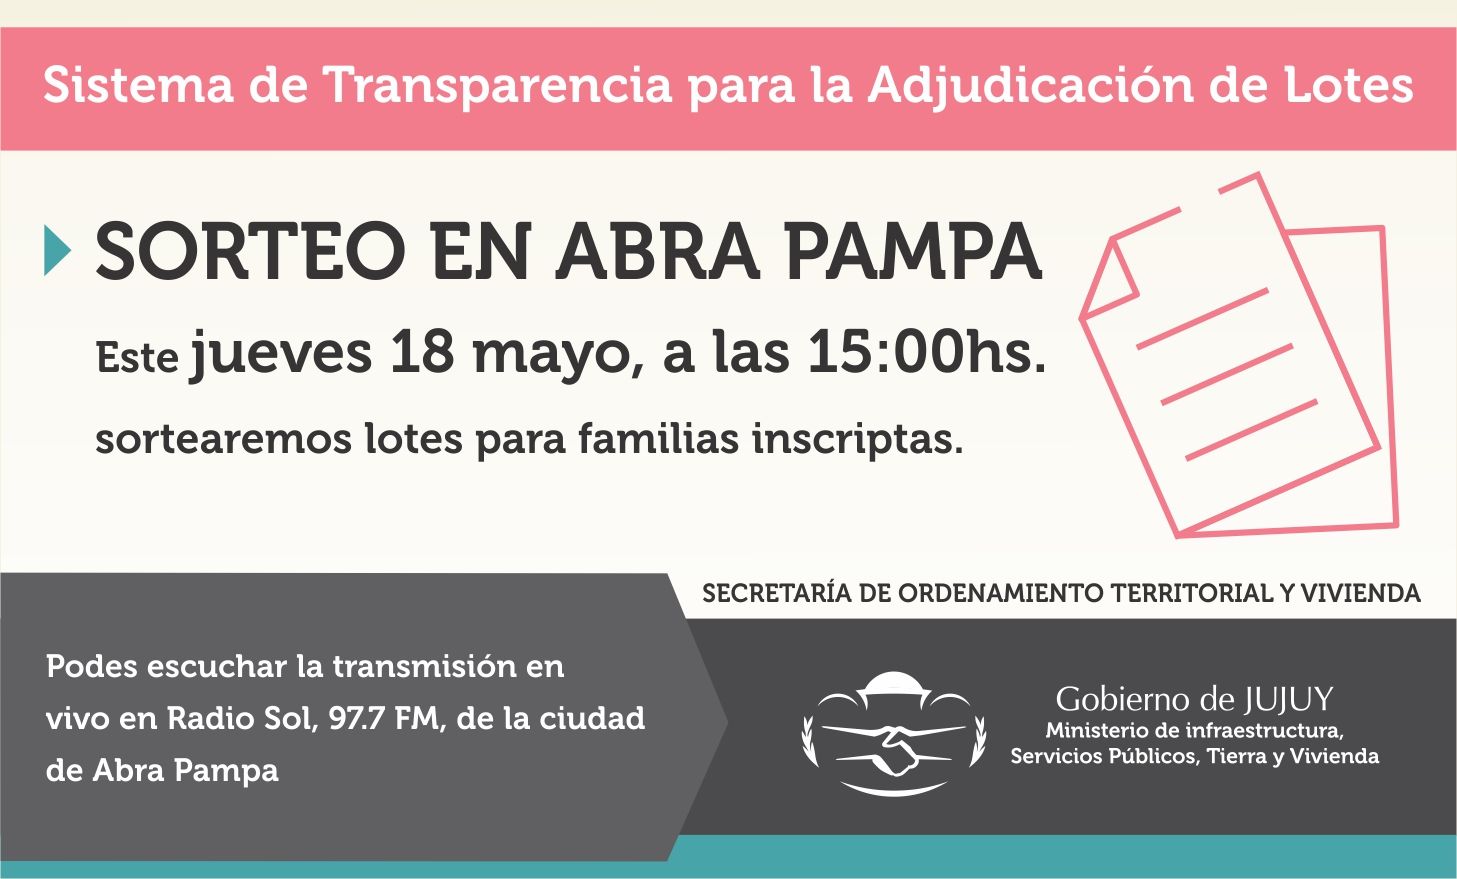 200 lotes con mensura, plano y servicios serán sorteados entre familias de Abra Pampa.